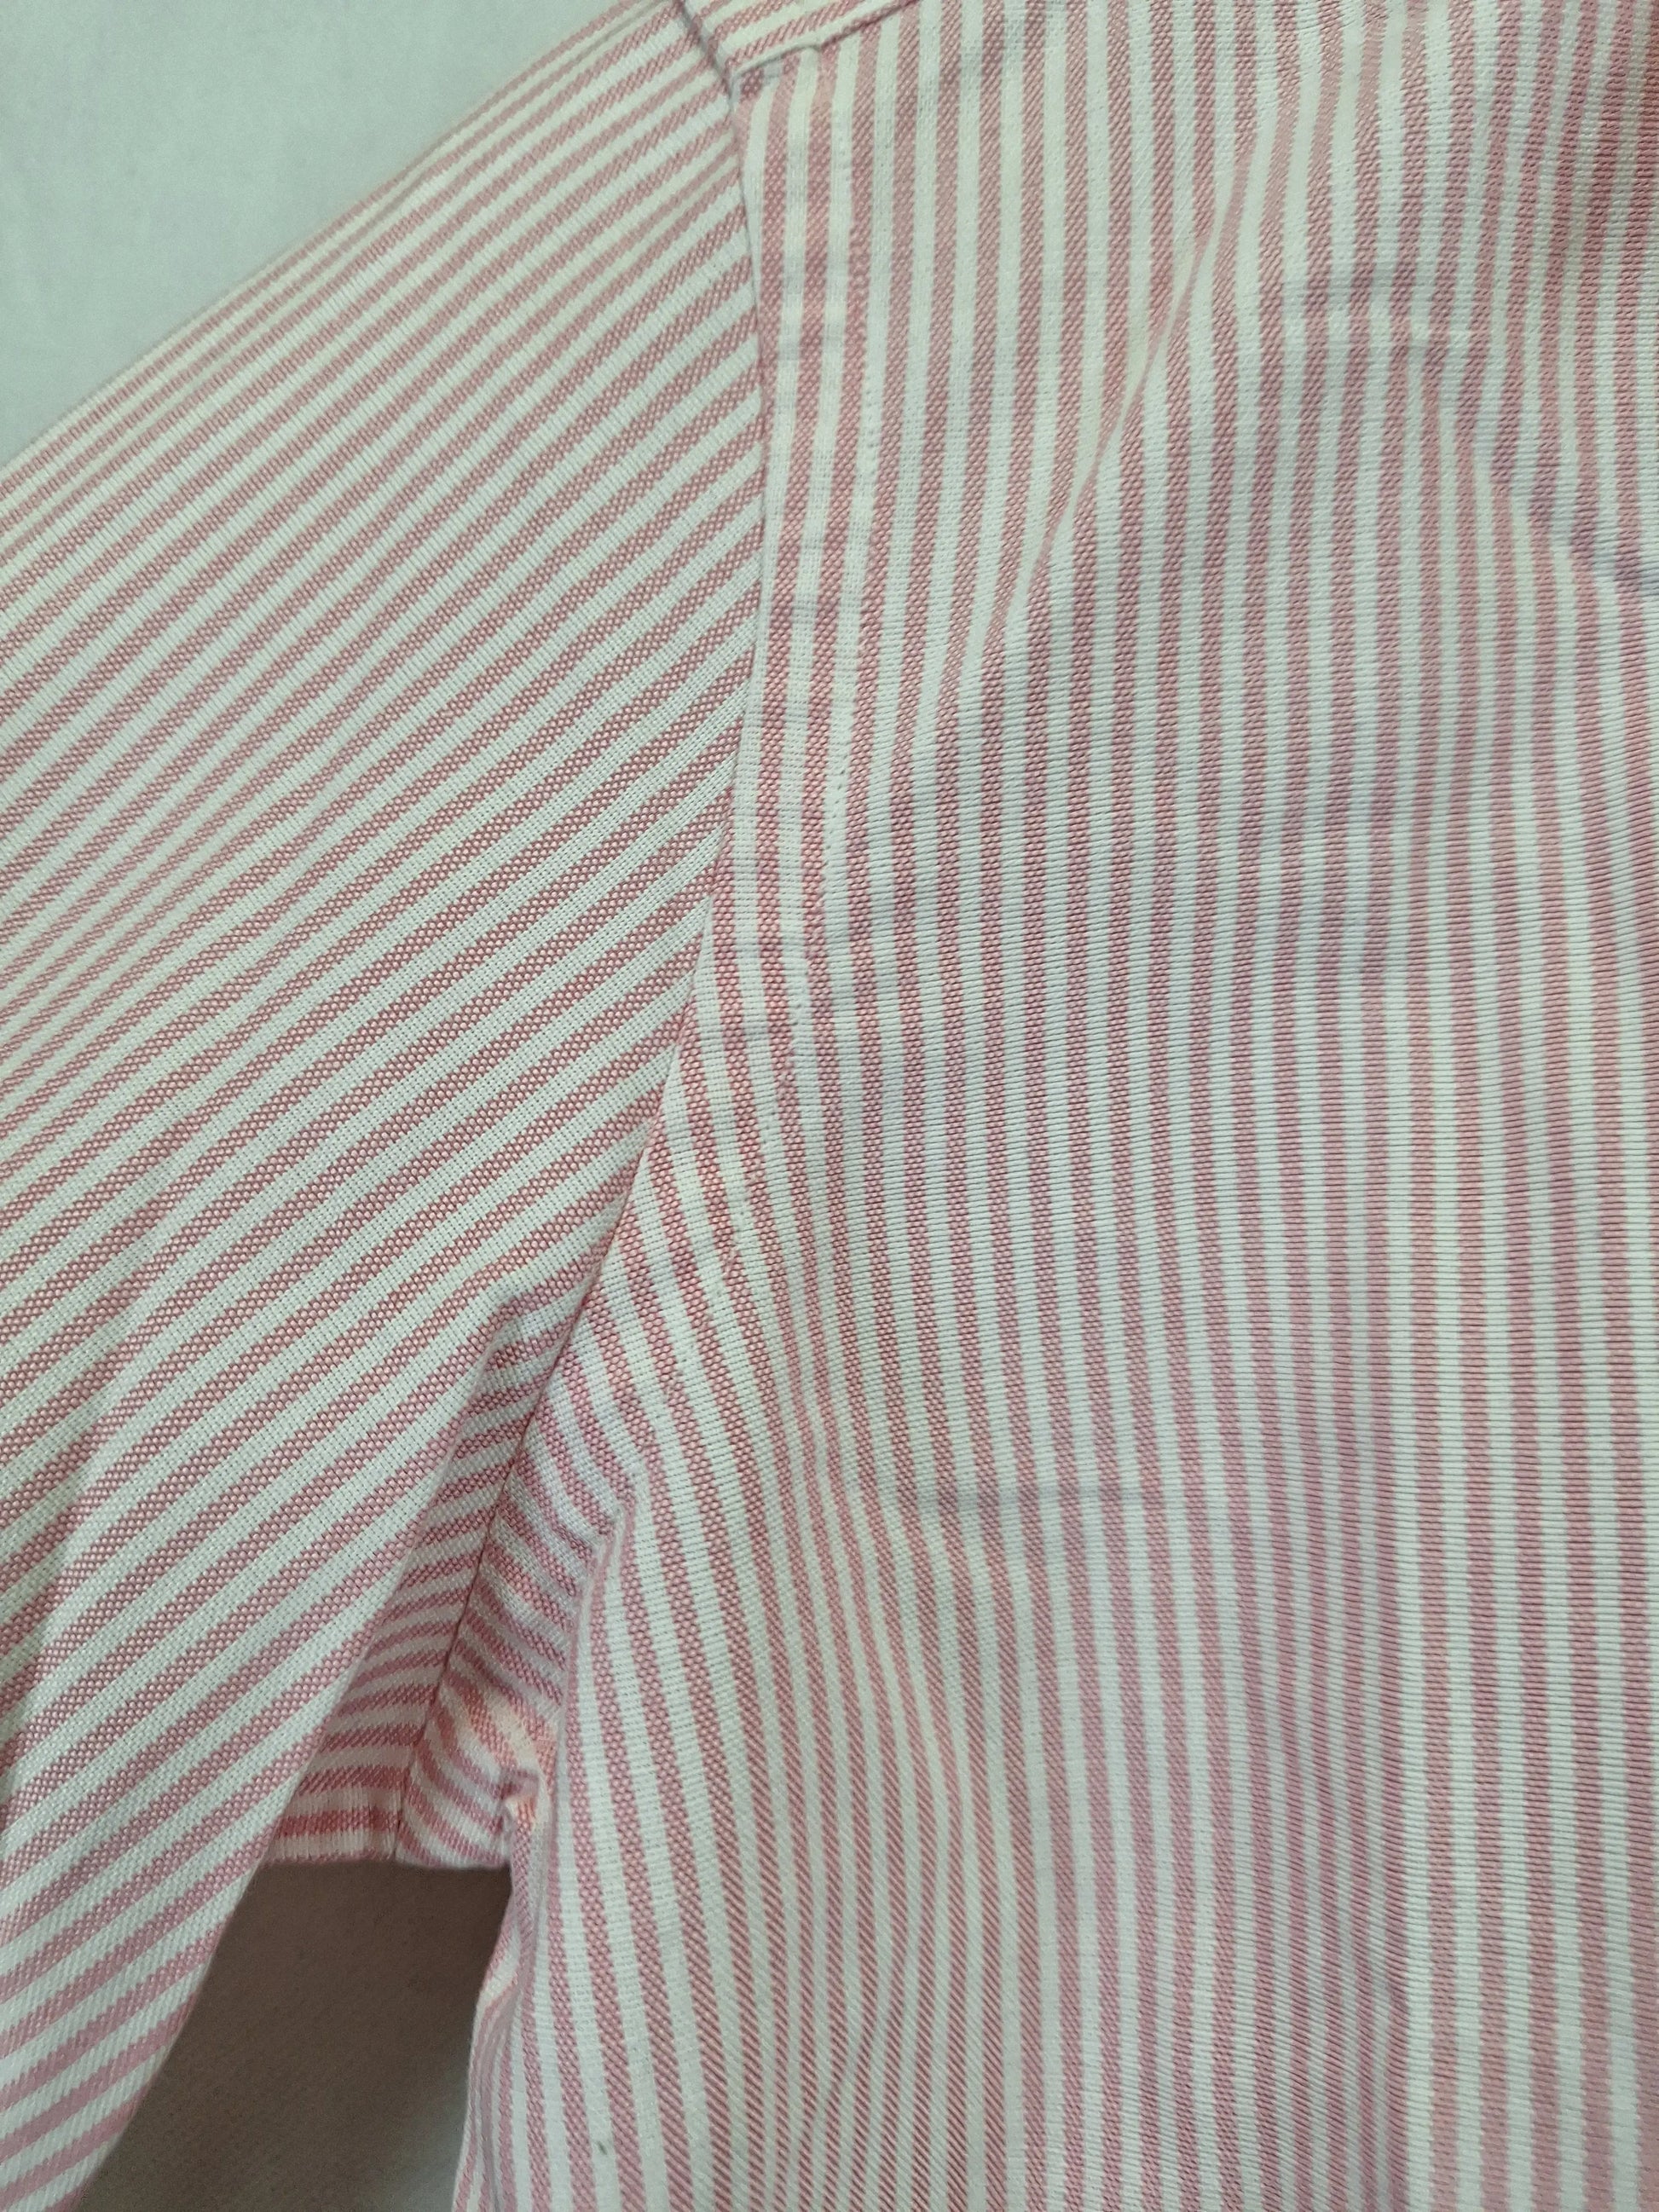 Ralph Lauren Preppy Super Slim Pinstripe Shirt Size 6 by SwapUp-Online Second Hand Store-Online Thrift Store